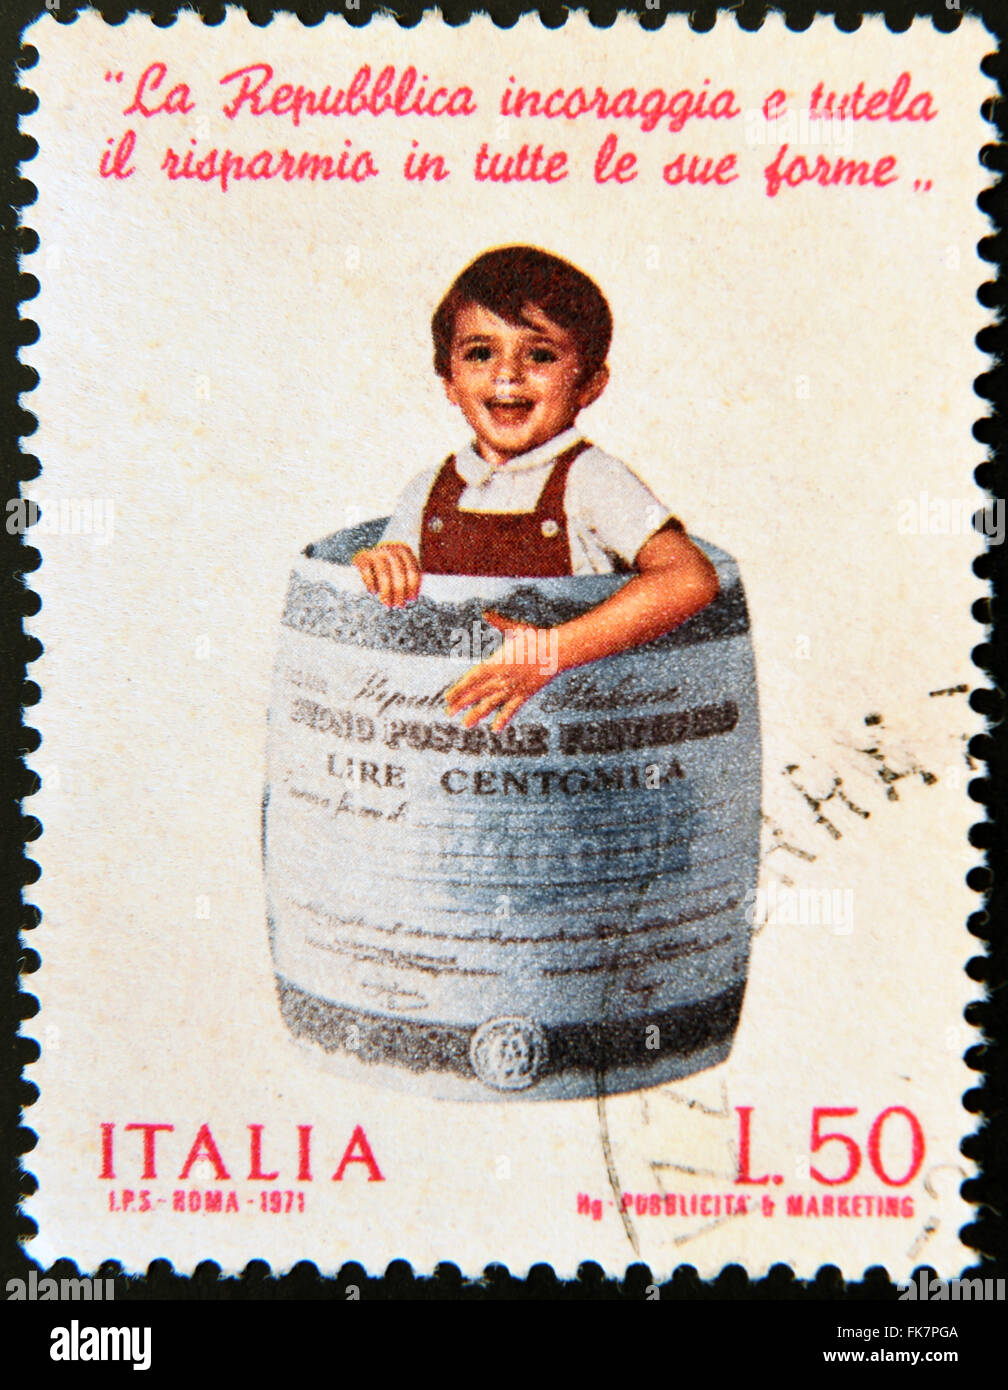 Italie - circa 1971 : timbre imprimé en Italie montre enfant dans le baril Fait de billet de banque, Banque d'épargne postale, circa 1971 Banque D'Images